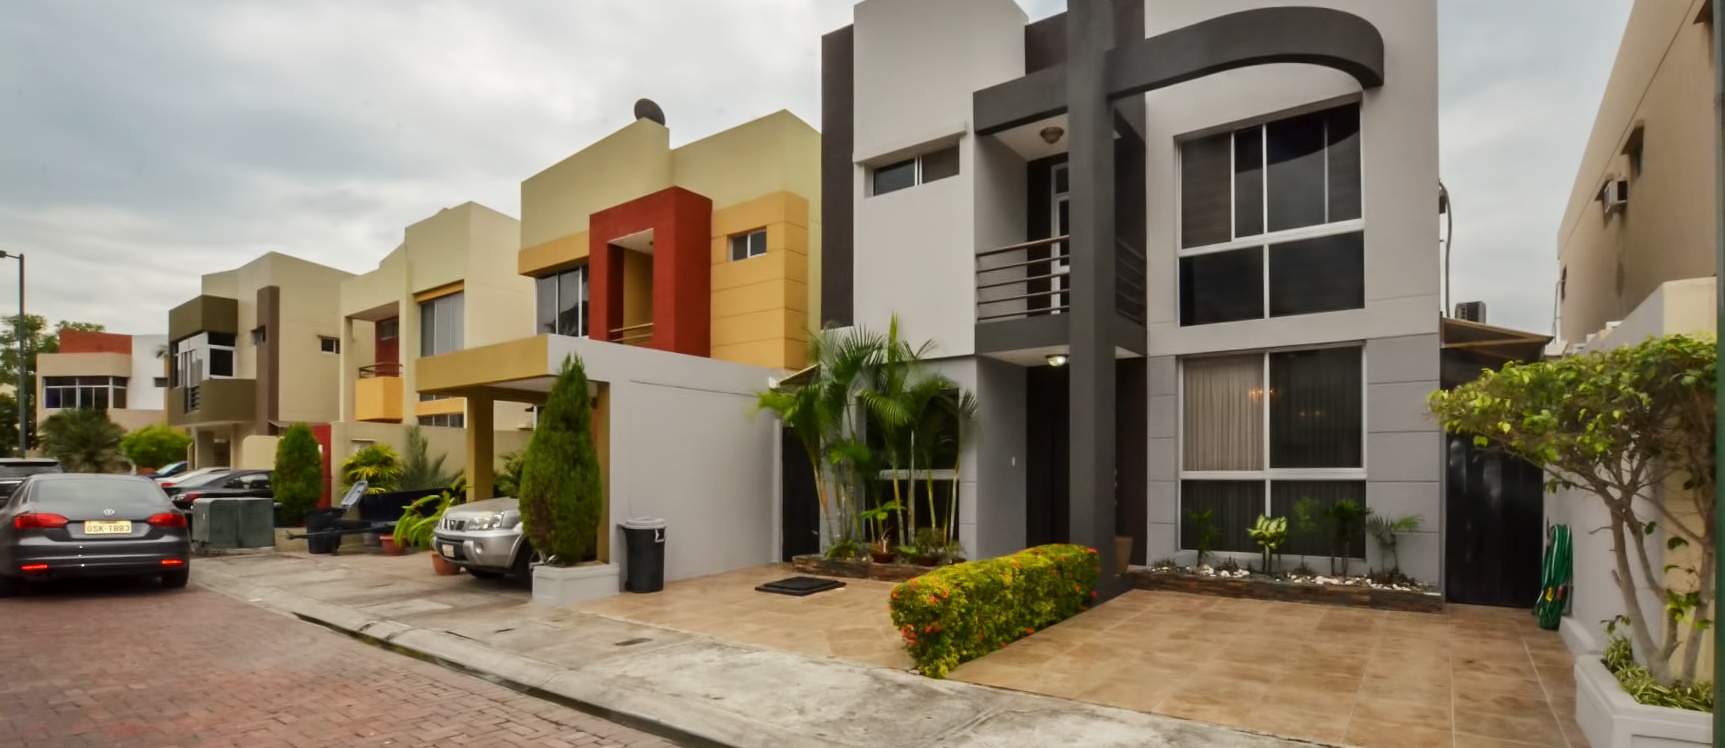 GeoBienes -  Casa en Venta en Urbanización Belo Horizonte Sector Vía a La Costa - Plusvalia Guayaquil Casas de venta y alquiler Inmobiliaria Ecuador